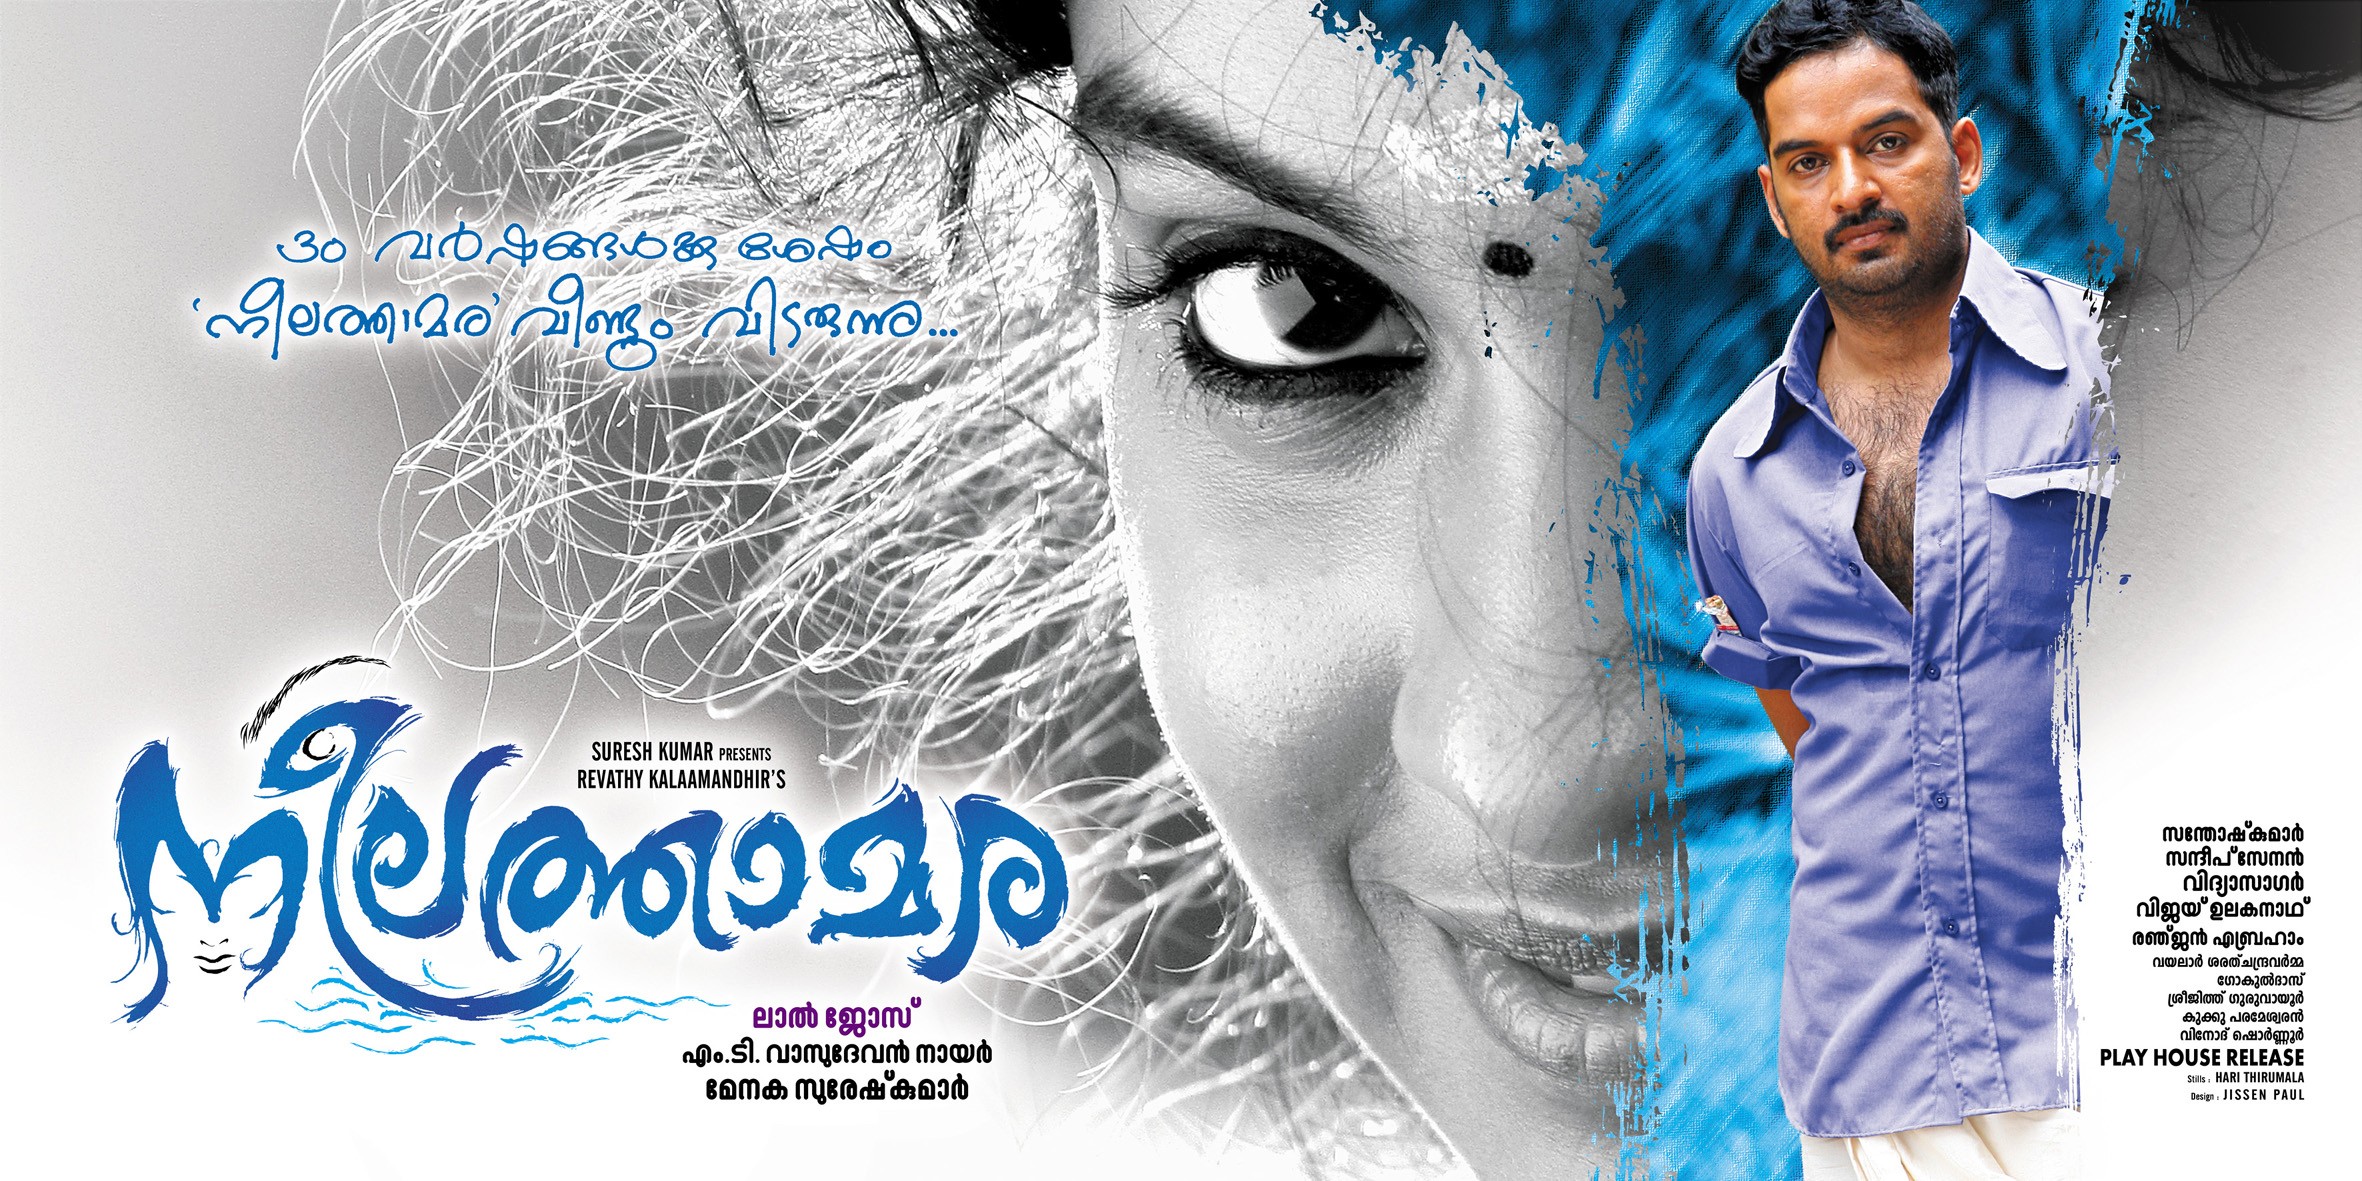 Mega Sized Movie Poster Image for Neelathamara (#7 of 12)